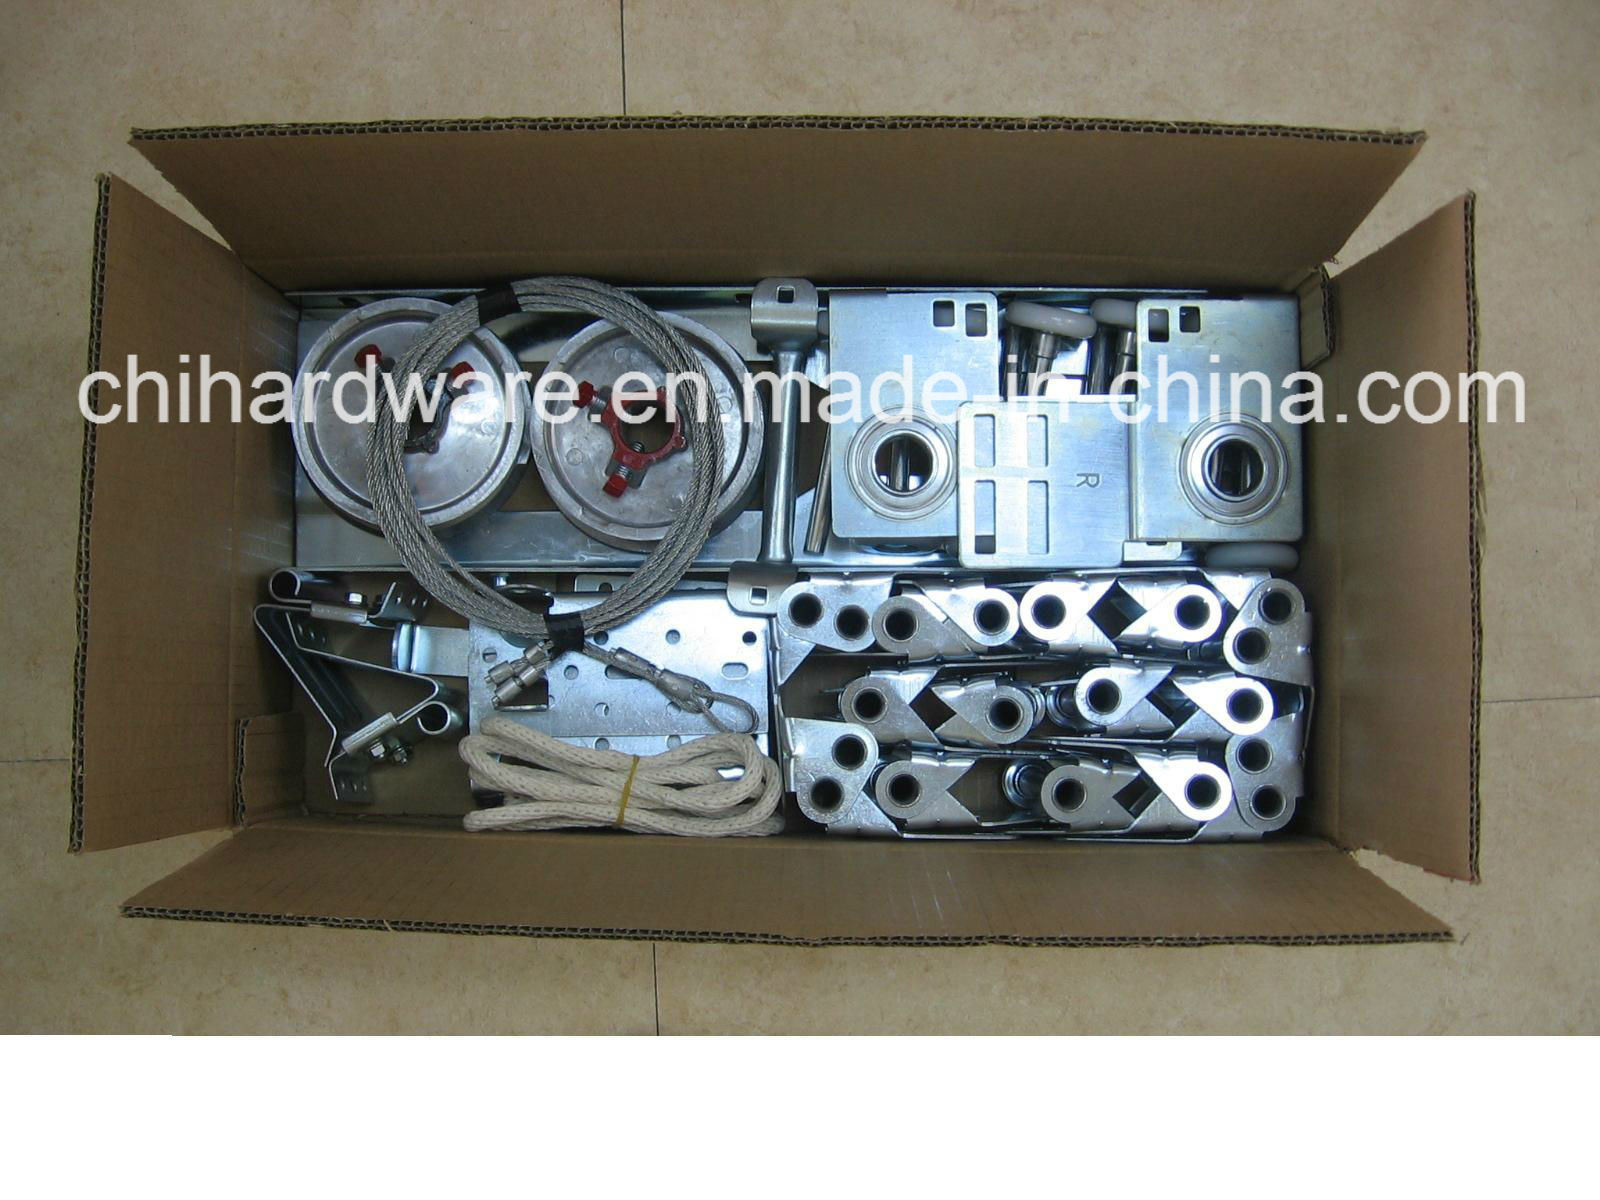 Hardware Box of Industrial Door Hardware